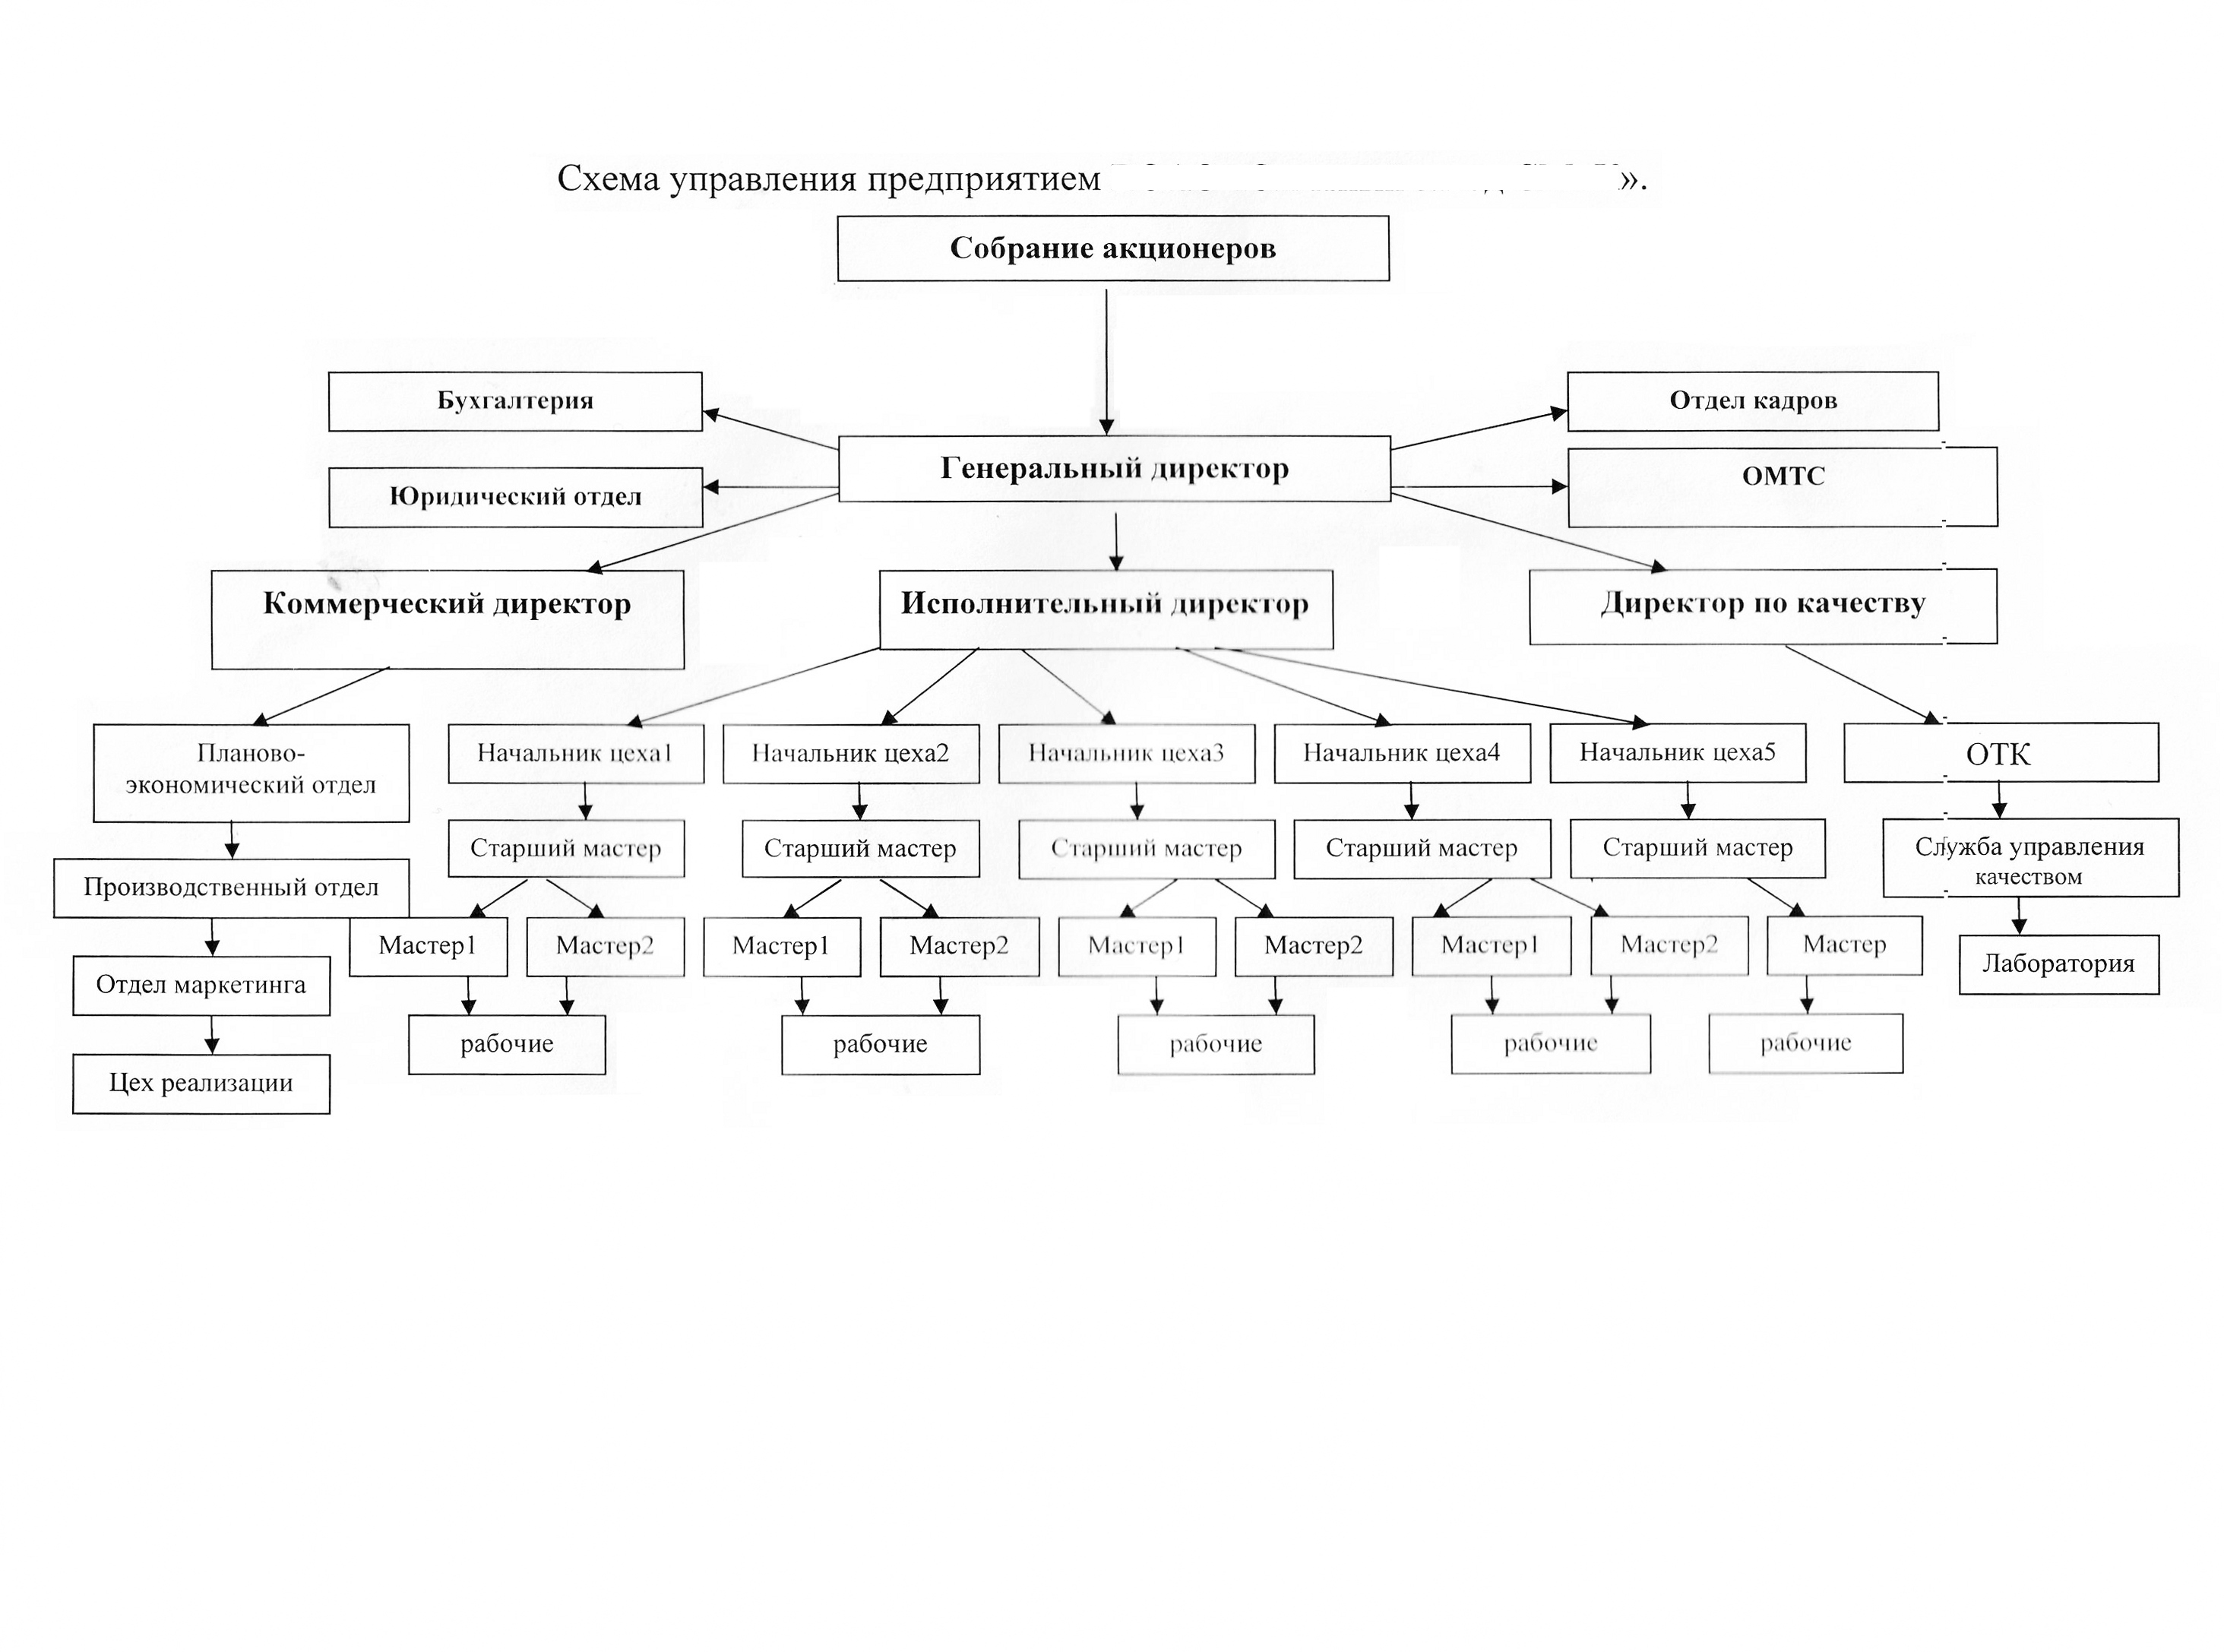 Схема организационной и управленческой структуры